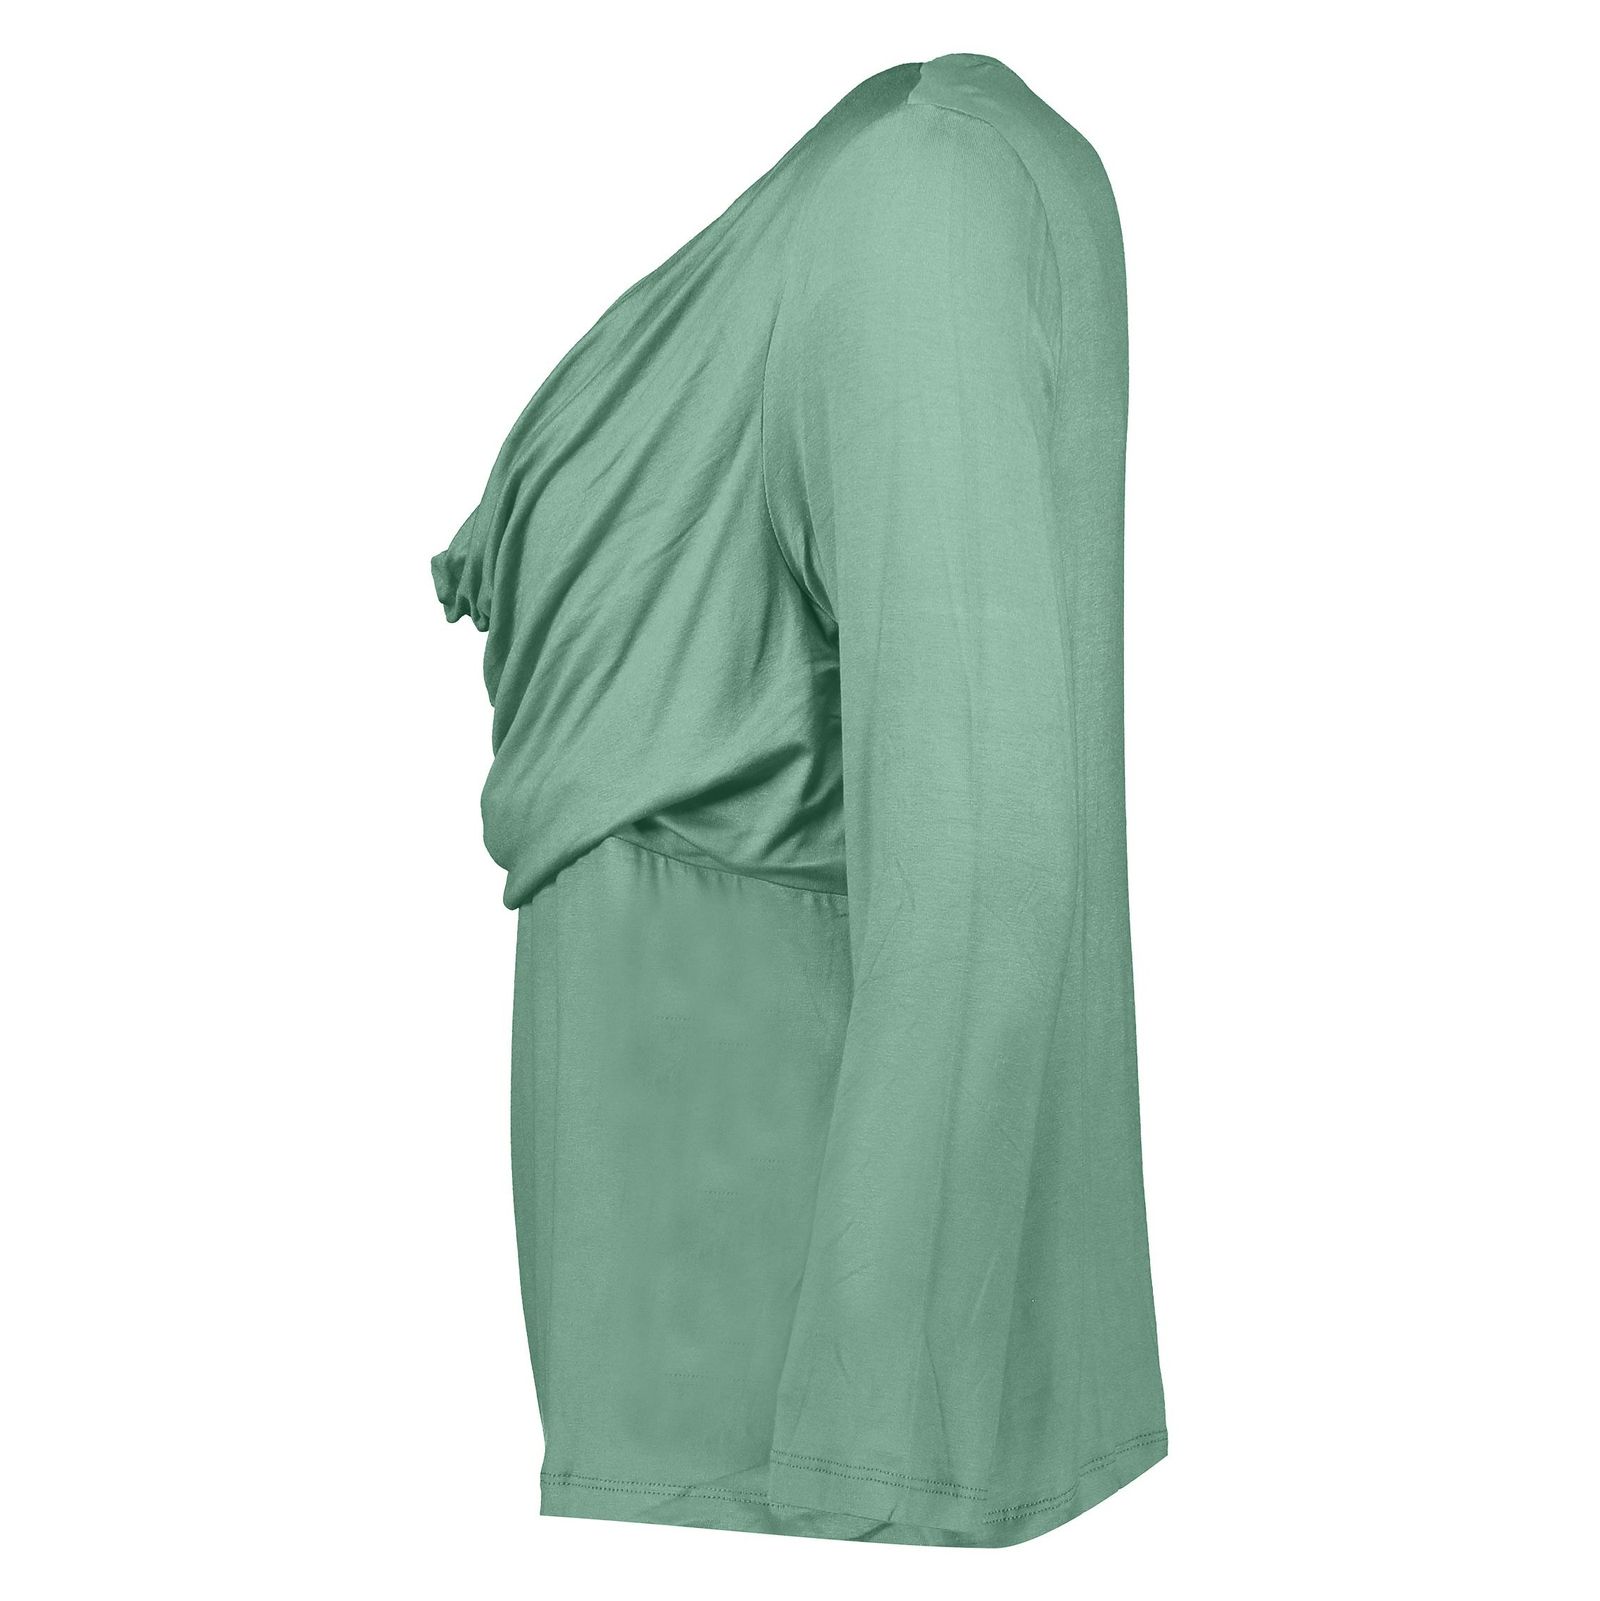 تی شرت آستین بلند زنانه - رامکات - سبز روشن - 4